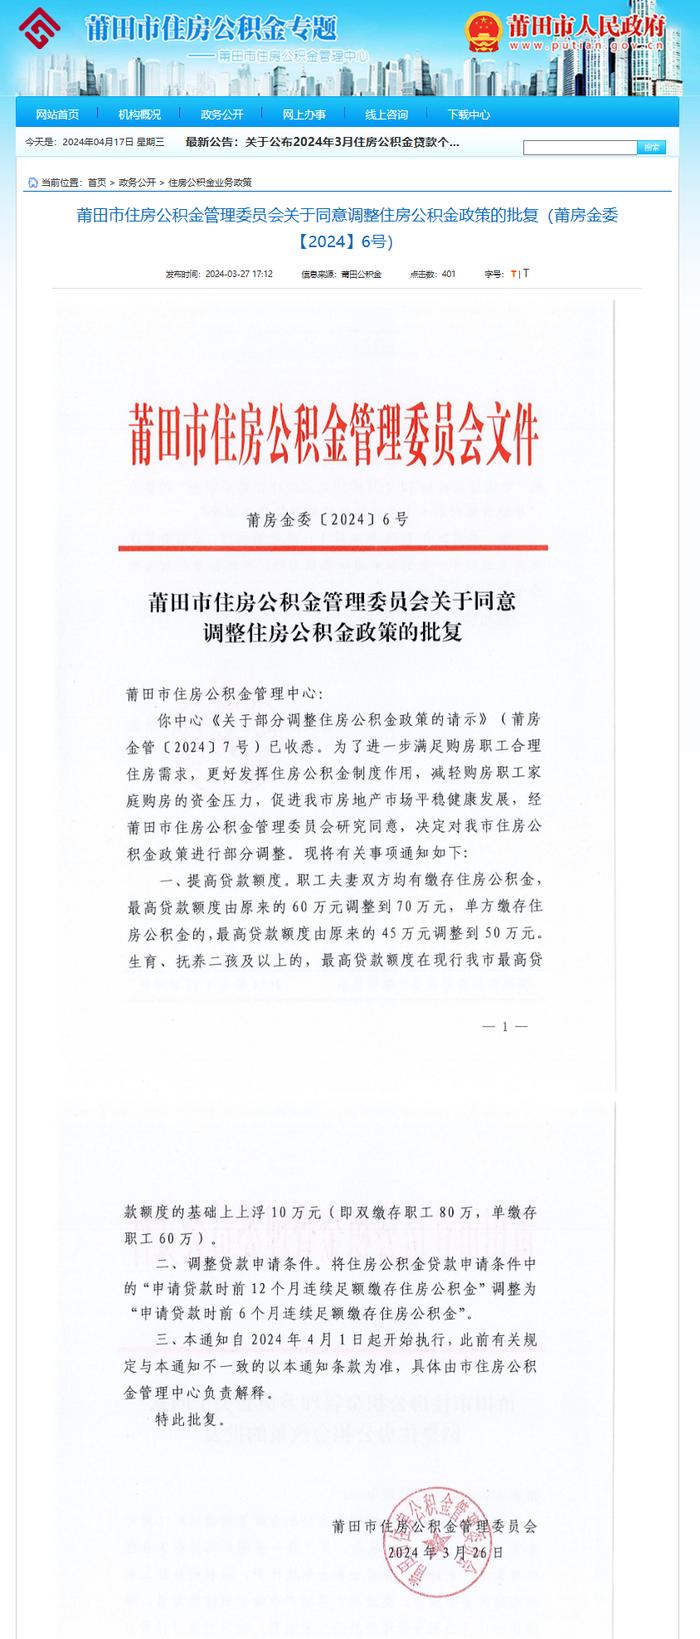 福建省莆田市住房公积金管理委员会同意调整住房公积金政策